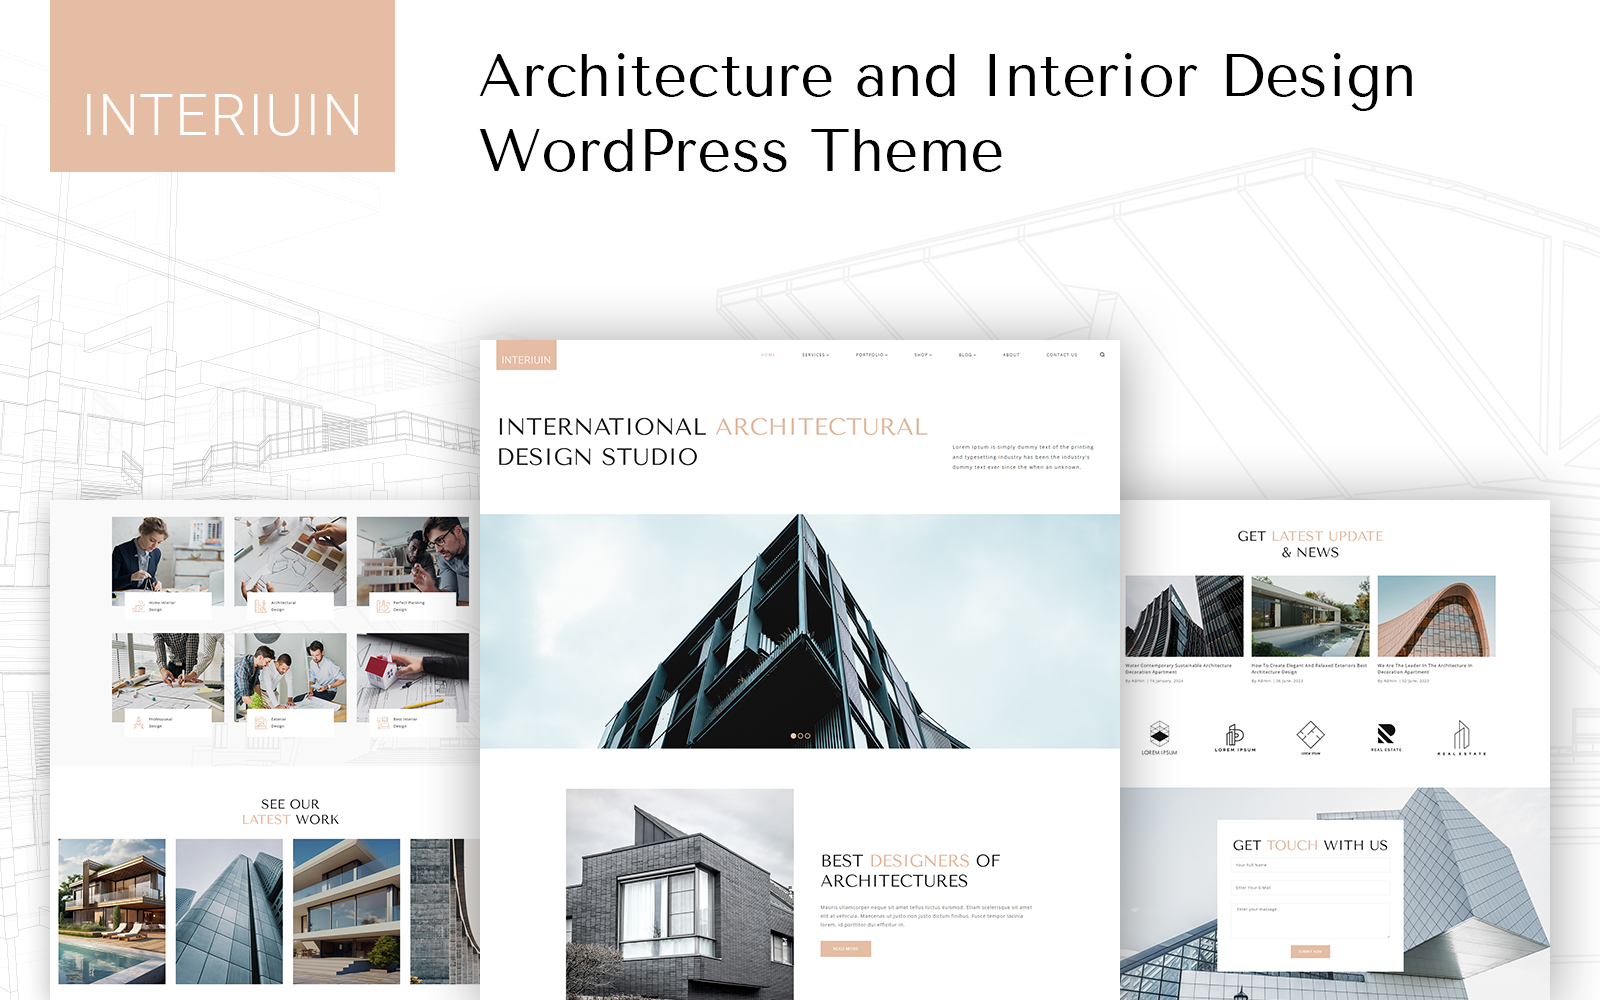 Interiuin - Architecture and Interior Design WordPress Theme